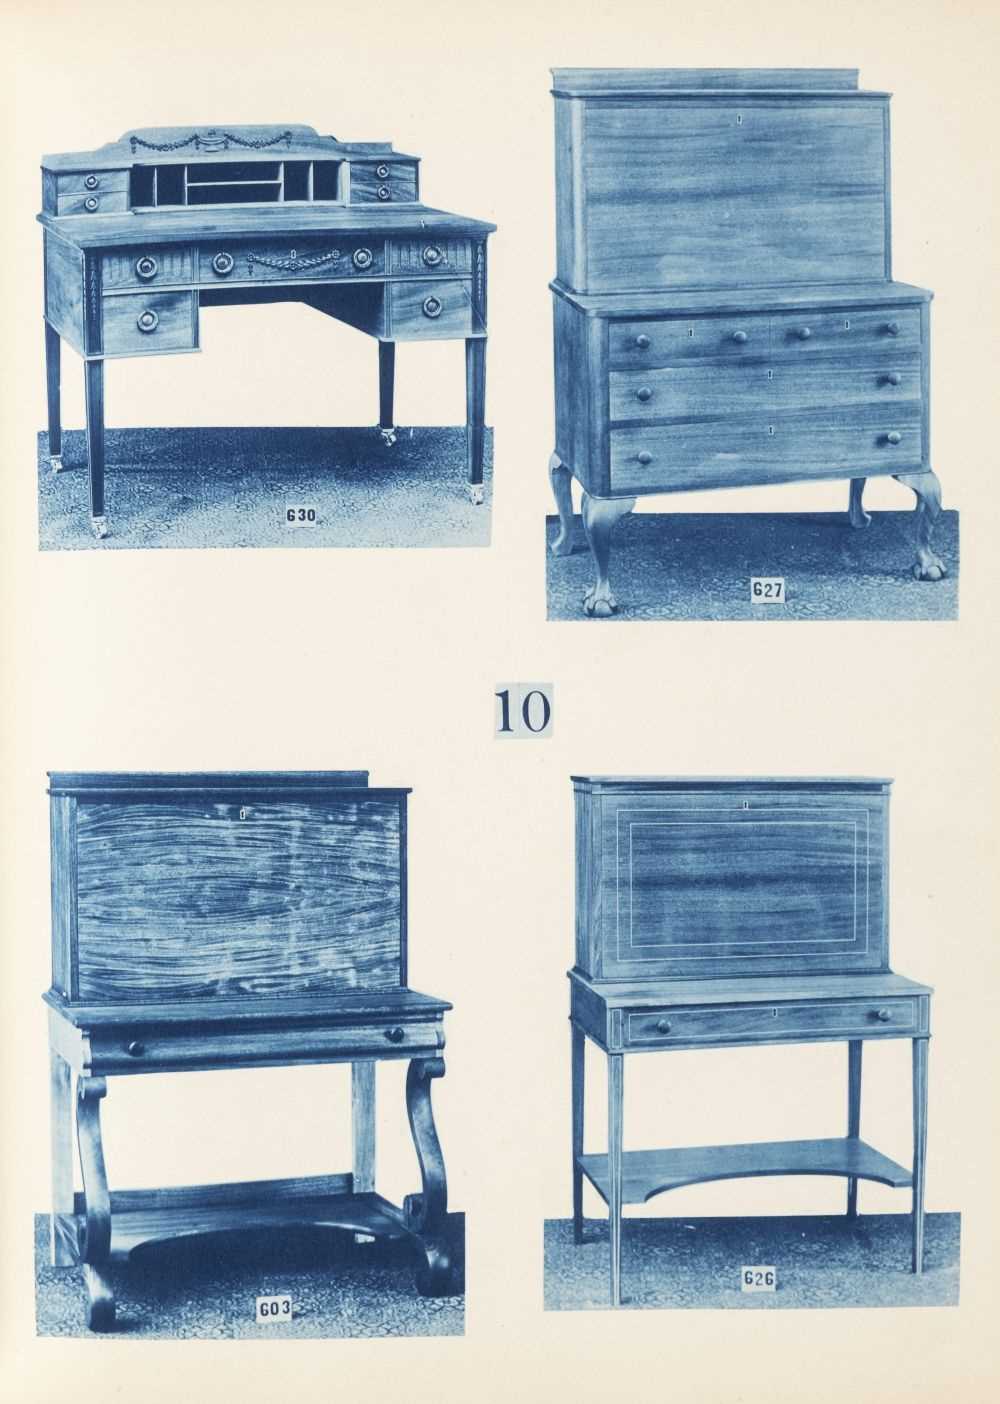 Lot 90 - Furniture Catalogue. A furniture catalogue for William A. Berkey Furniture Co., c. 1900s